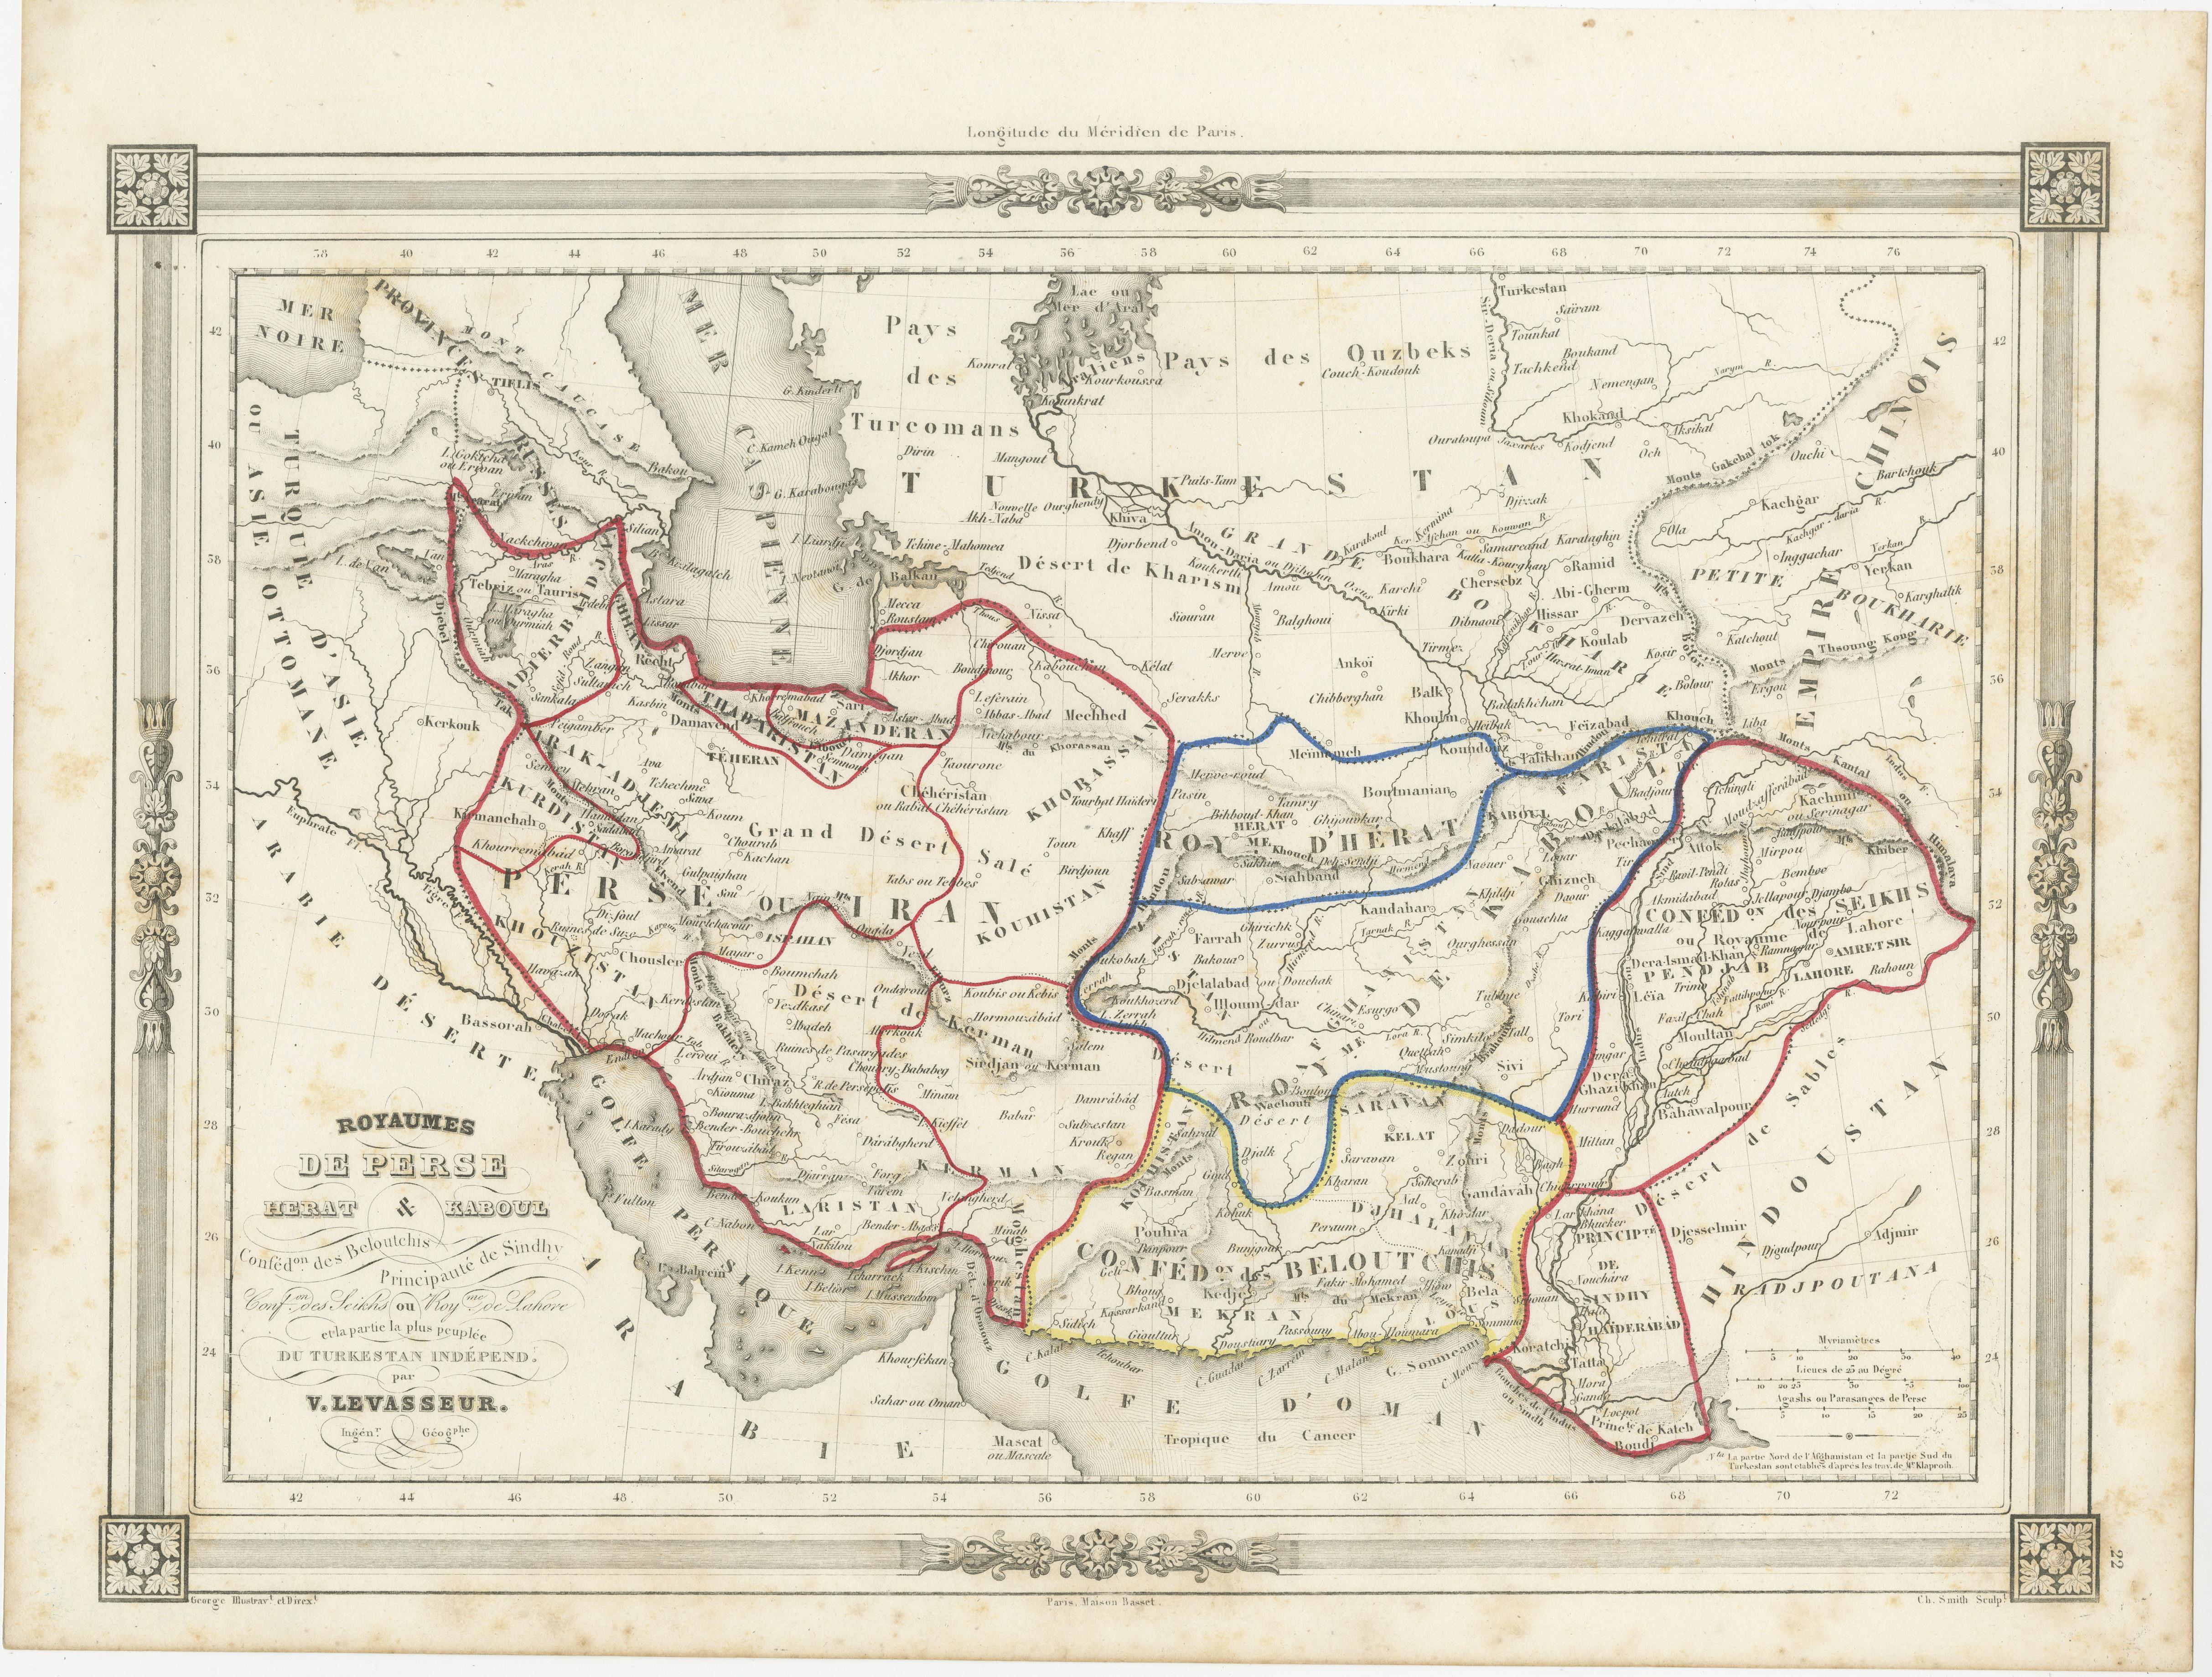 Die antike Karte mit dem Titel 'Royaumes de Perse Herat & Kaboul' ist eine attraktive Karte von Persien. Hier sind die wichtigsten Details und Merkmale der Karte:

1. **Geografischer Geltungsbereich**:
   - Die Karte deckt einen großen Teil der